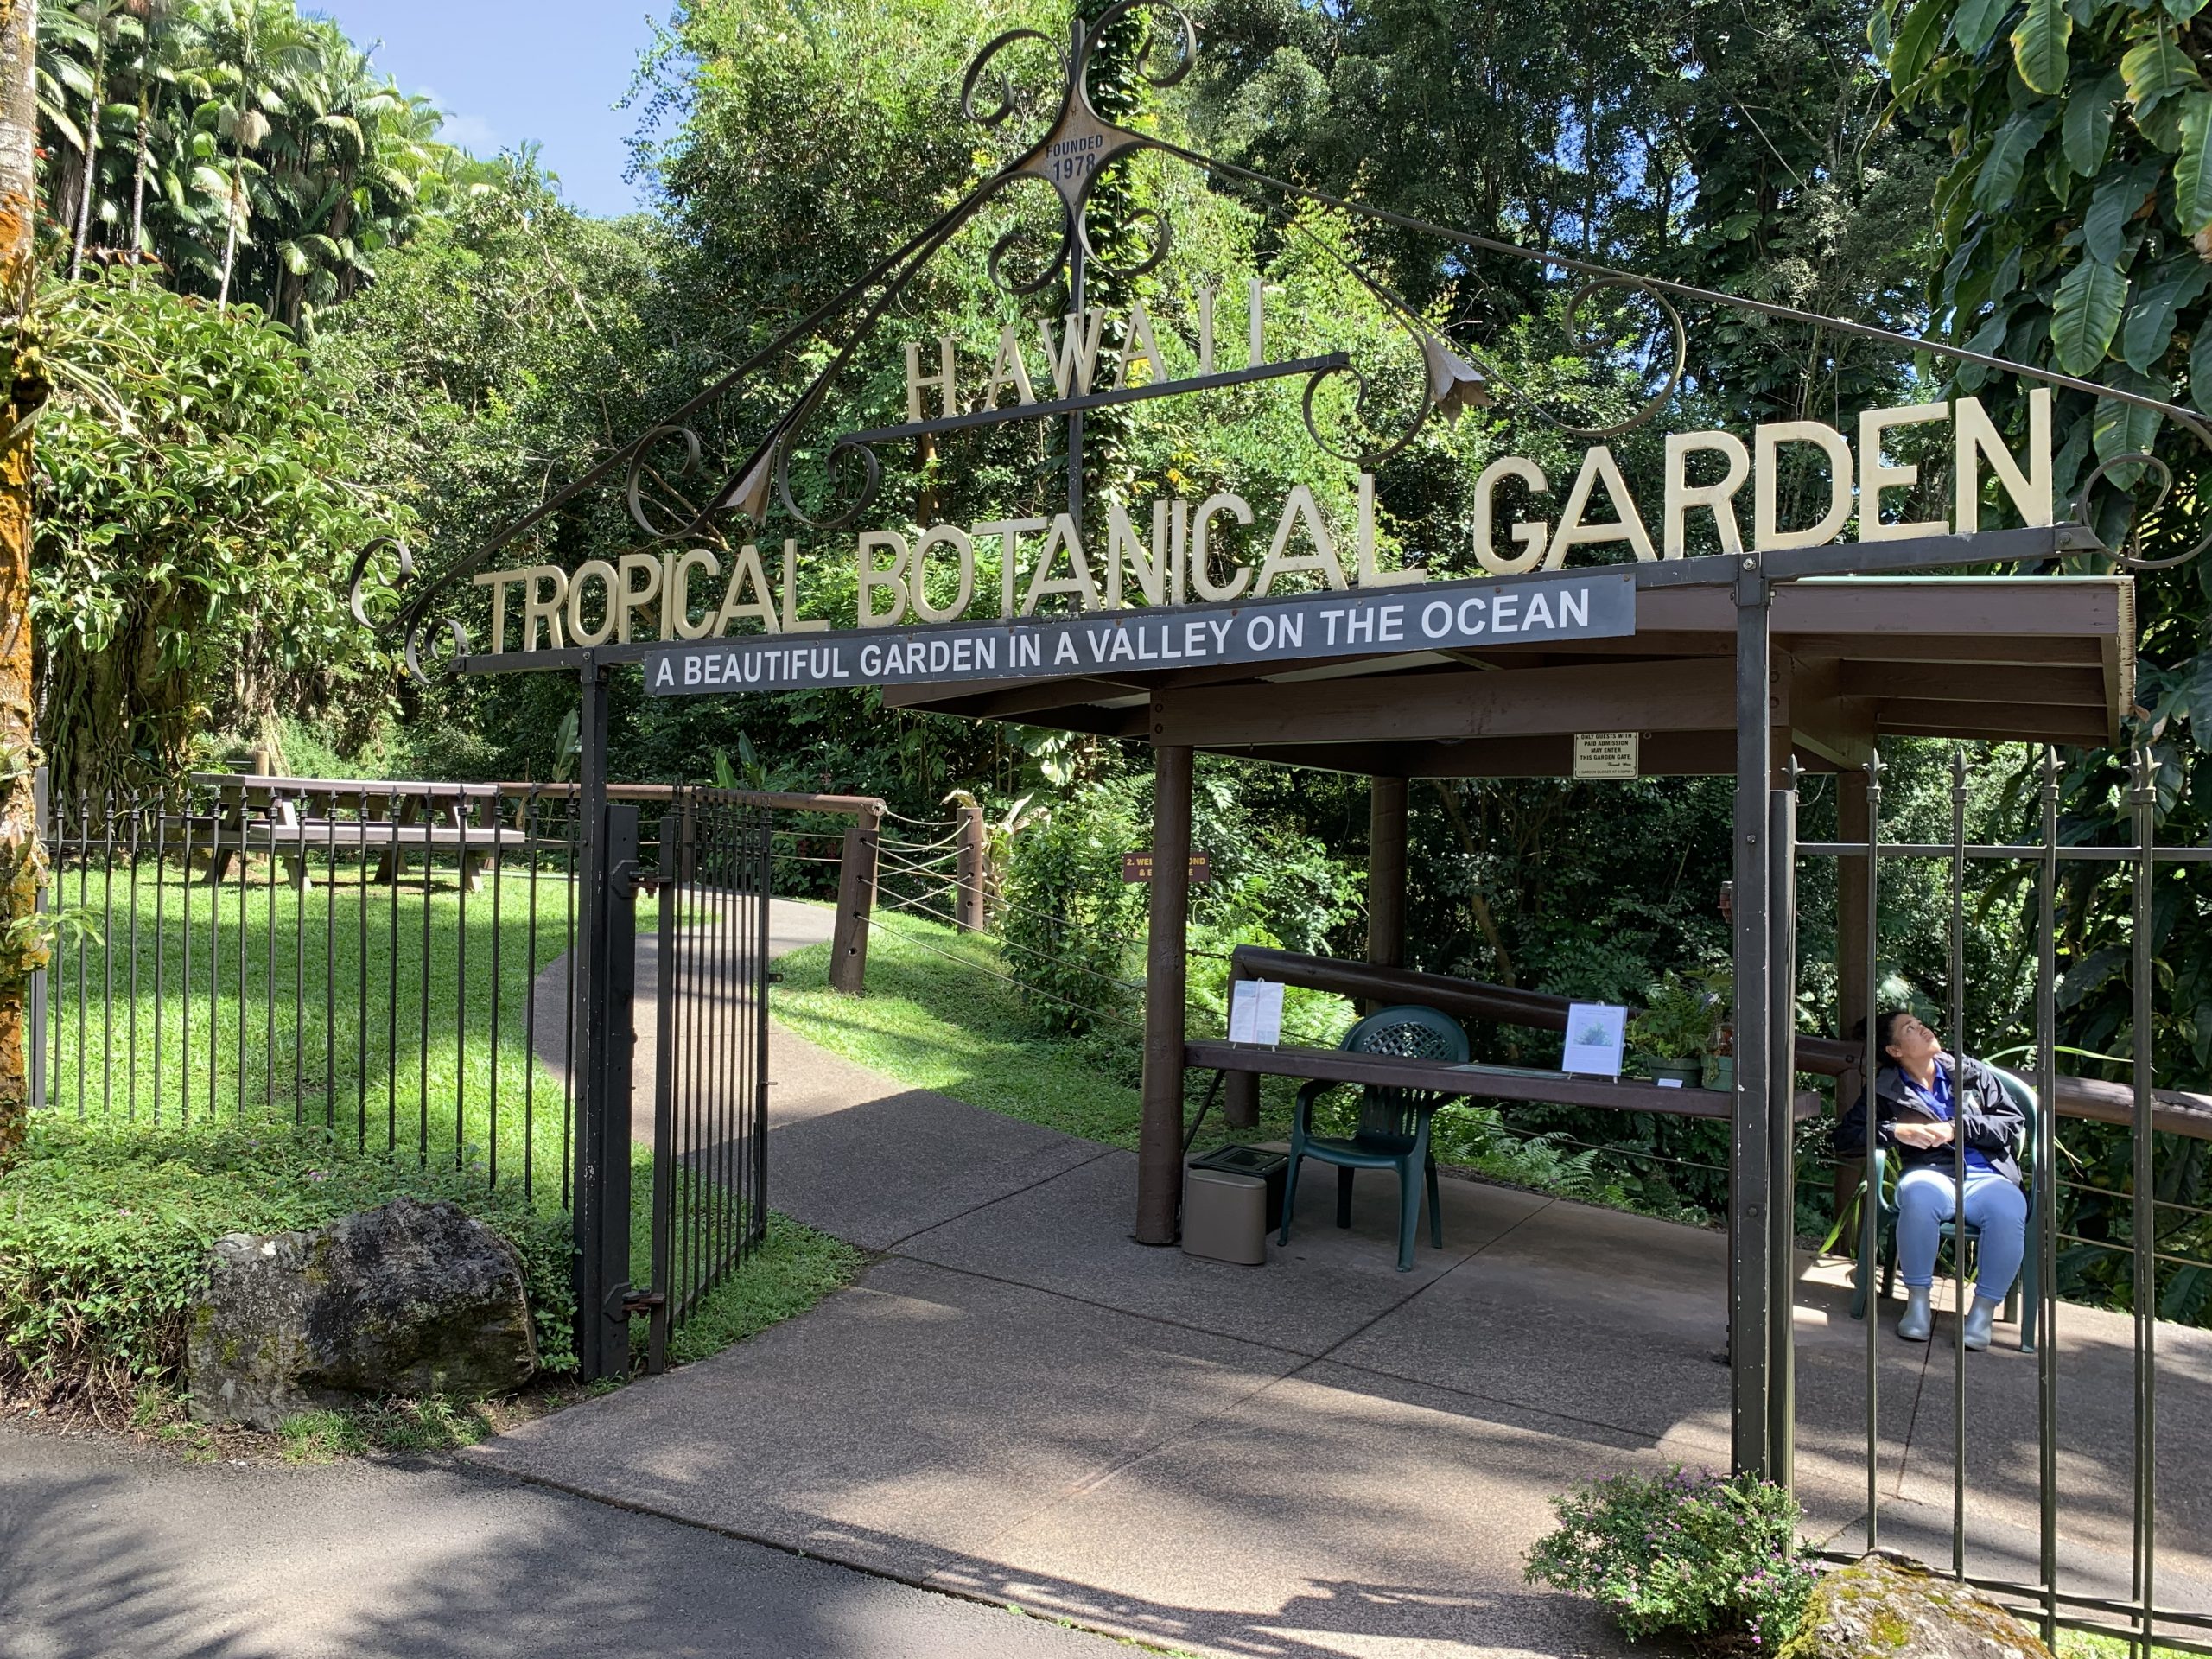 Entrance to the Hawaiian Tropical Botanical Garden